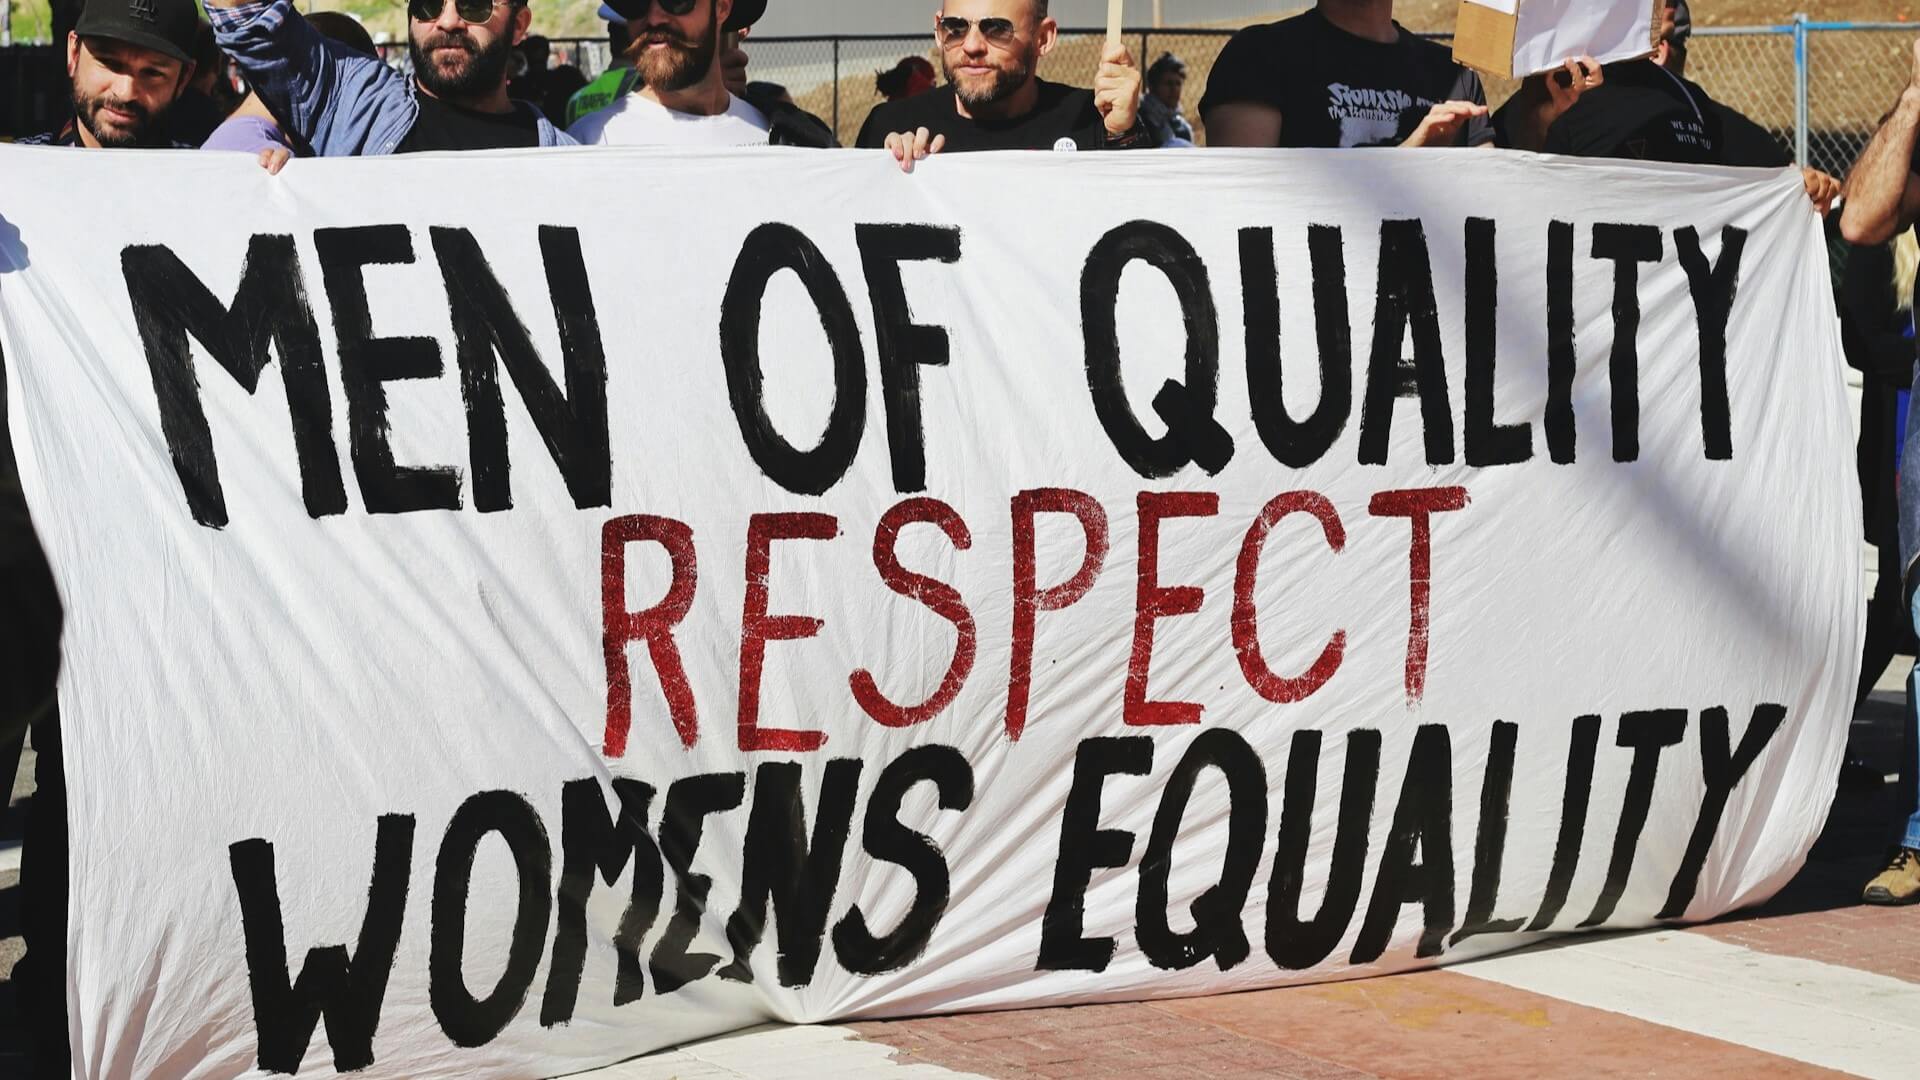 Un cartel en una protesta que dice "Los hombres de calidad respetan la igualdad de las mujeres"